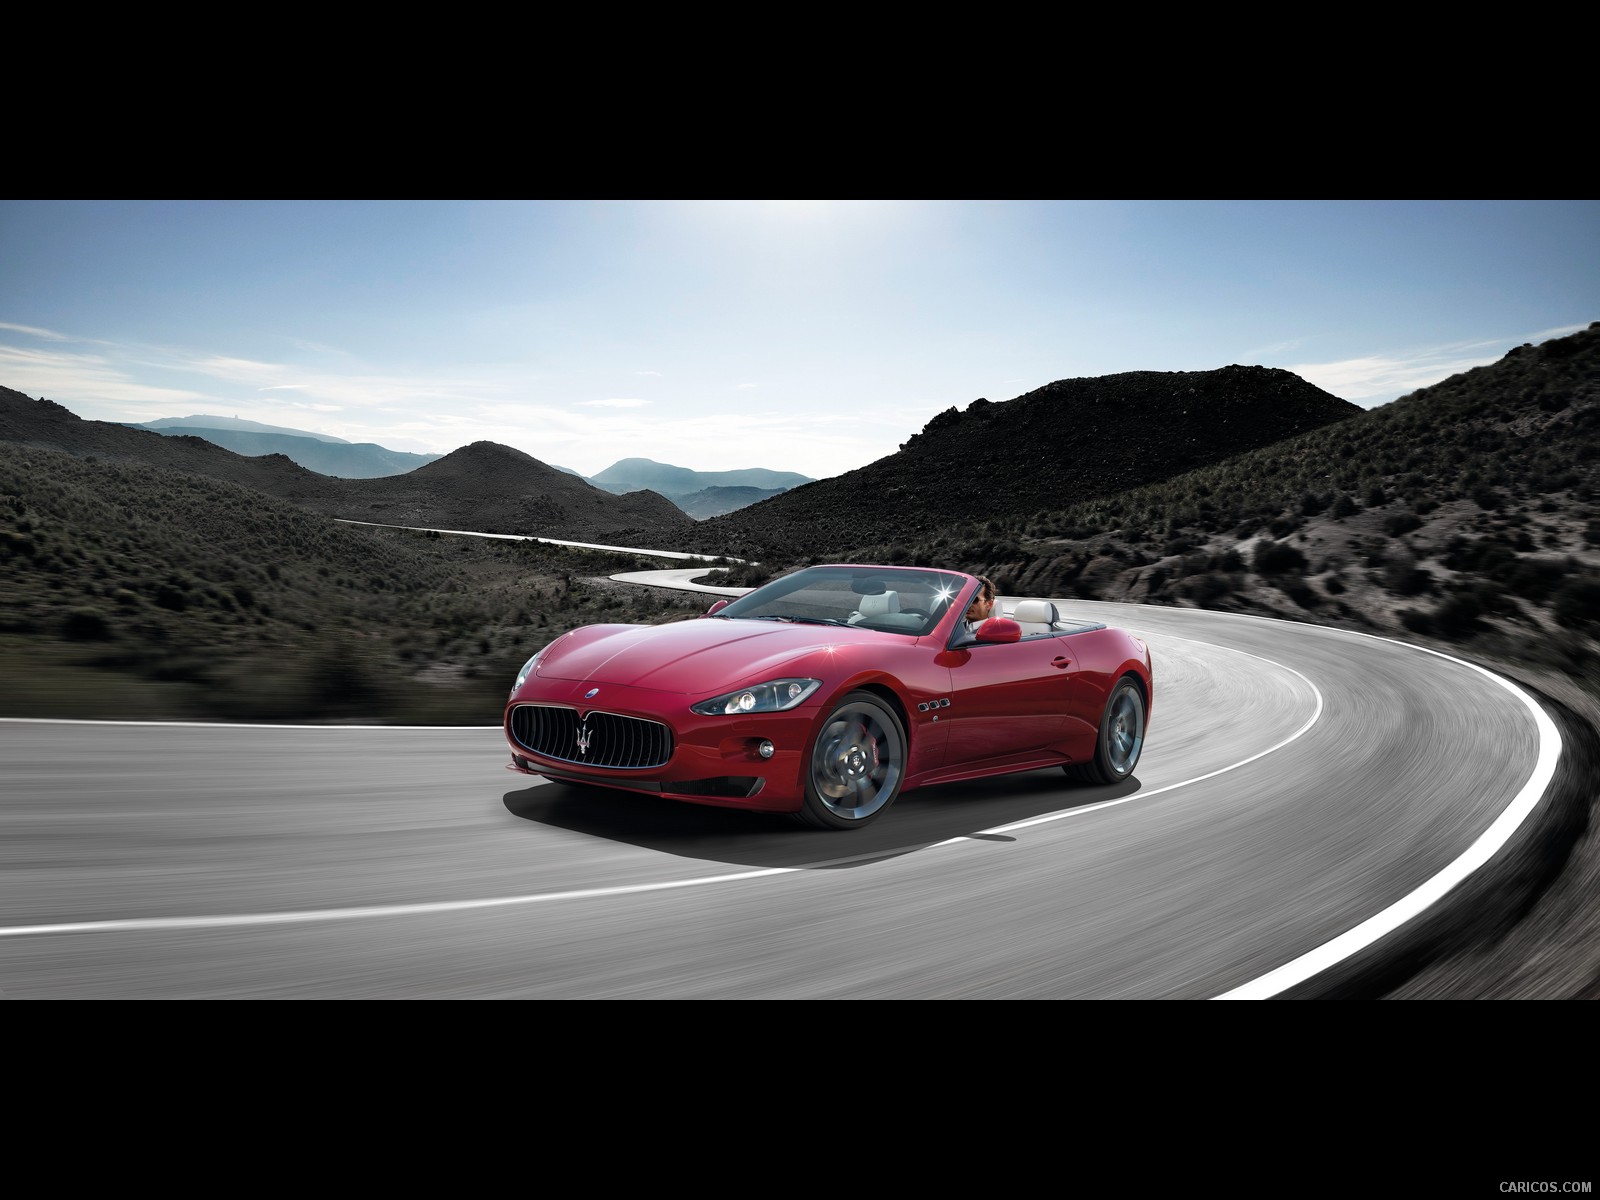 Maserati+grancabrio+red